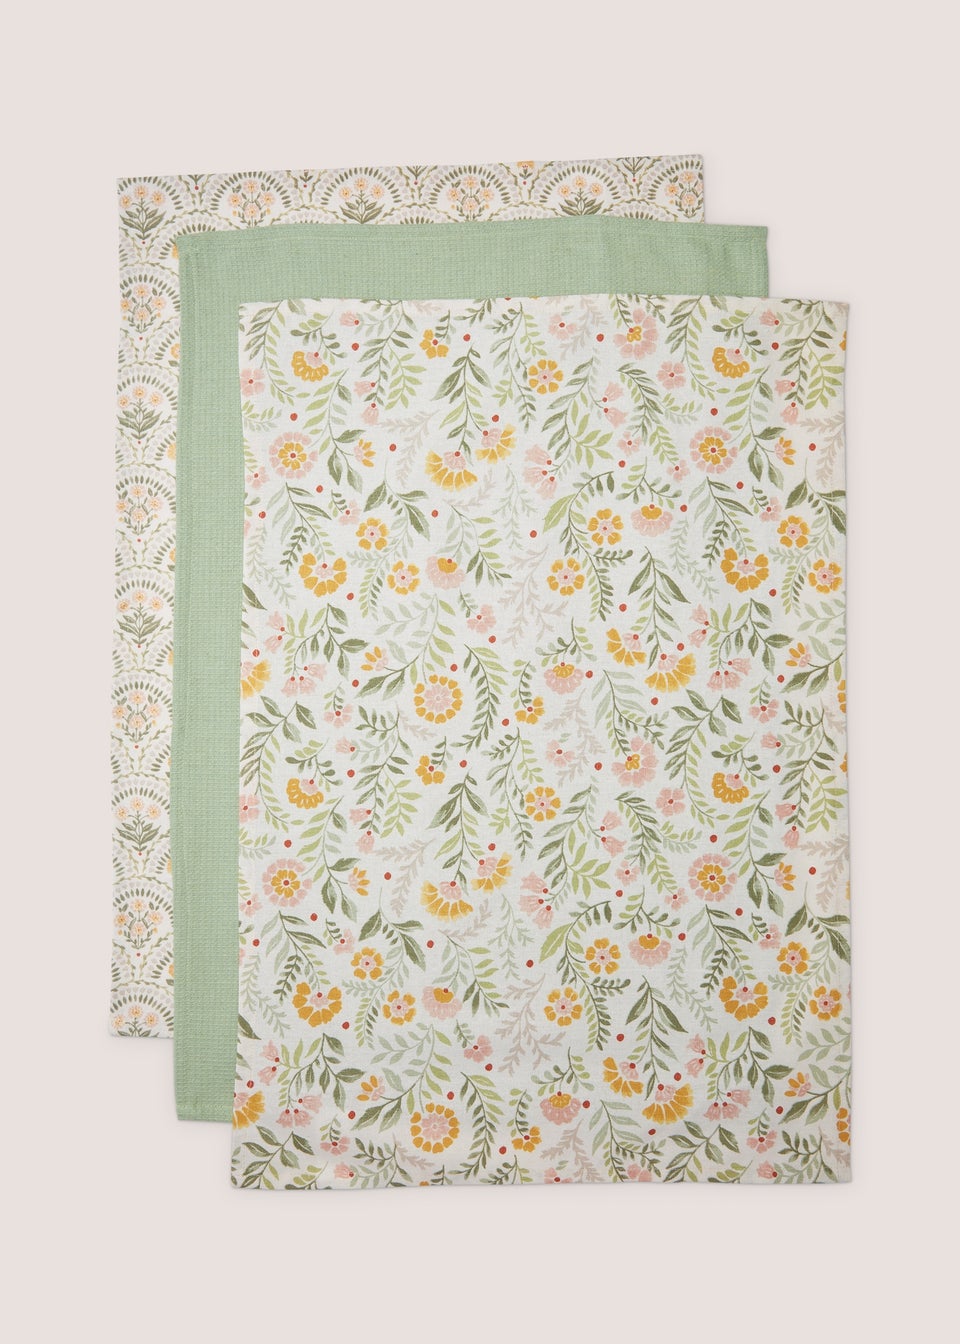 цена Комплект из 3 зеленых кухонных полотенец с народным цветочным рисунком (46 см x 65 см) Homestore, серебрянный